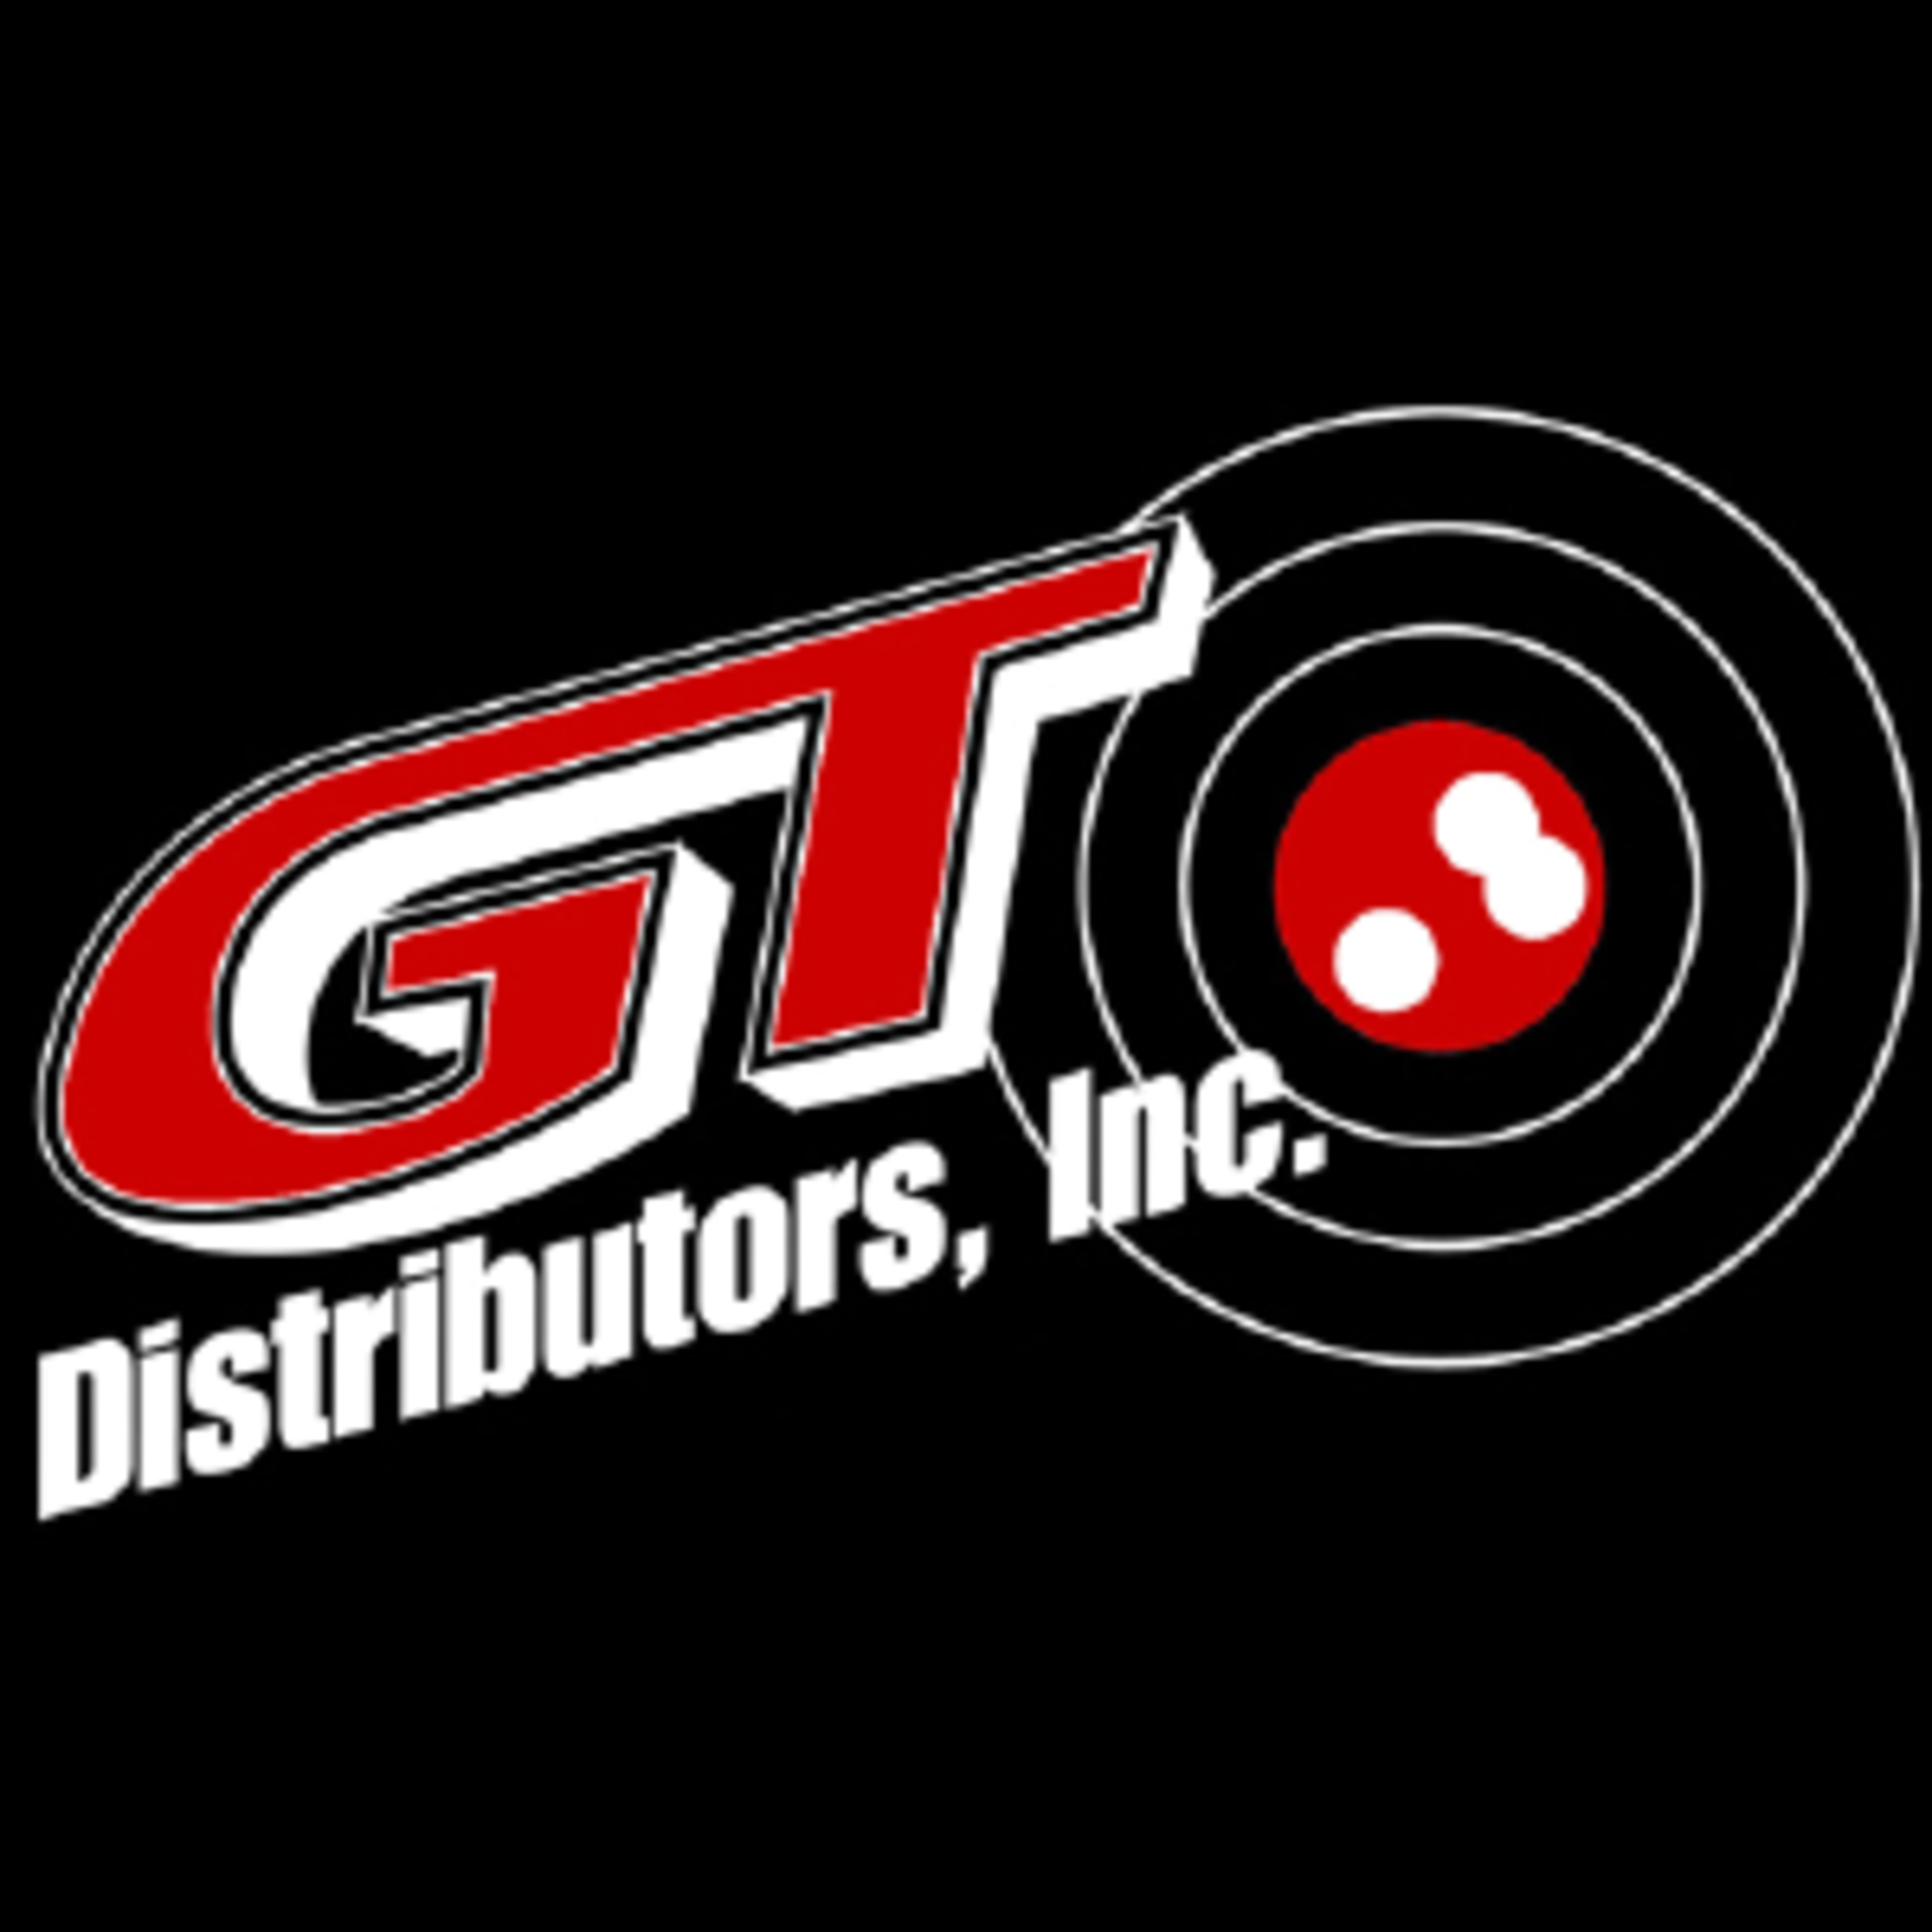 GT DistributorsCode